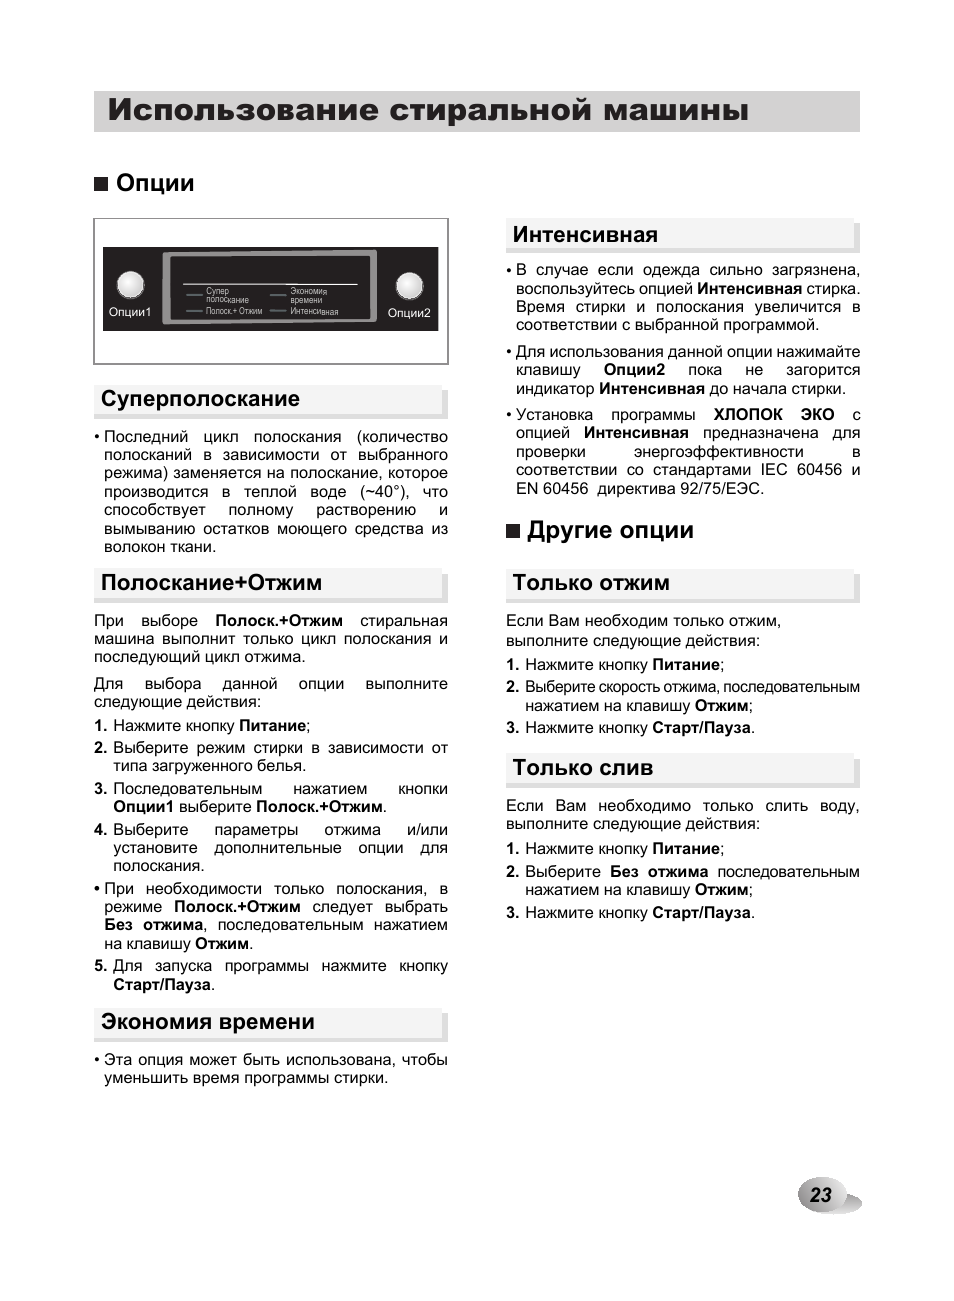 Обзор стиральных машин lg f1281 | портал о компьютерах и бытовой технике